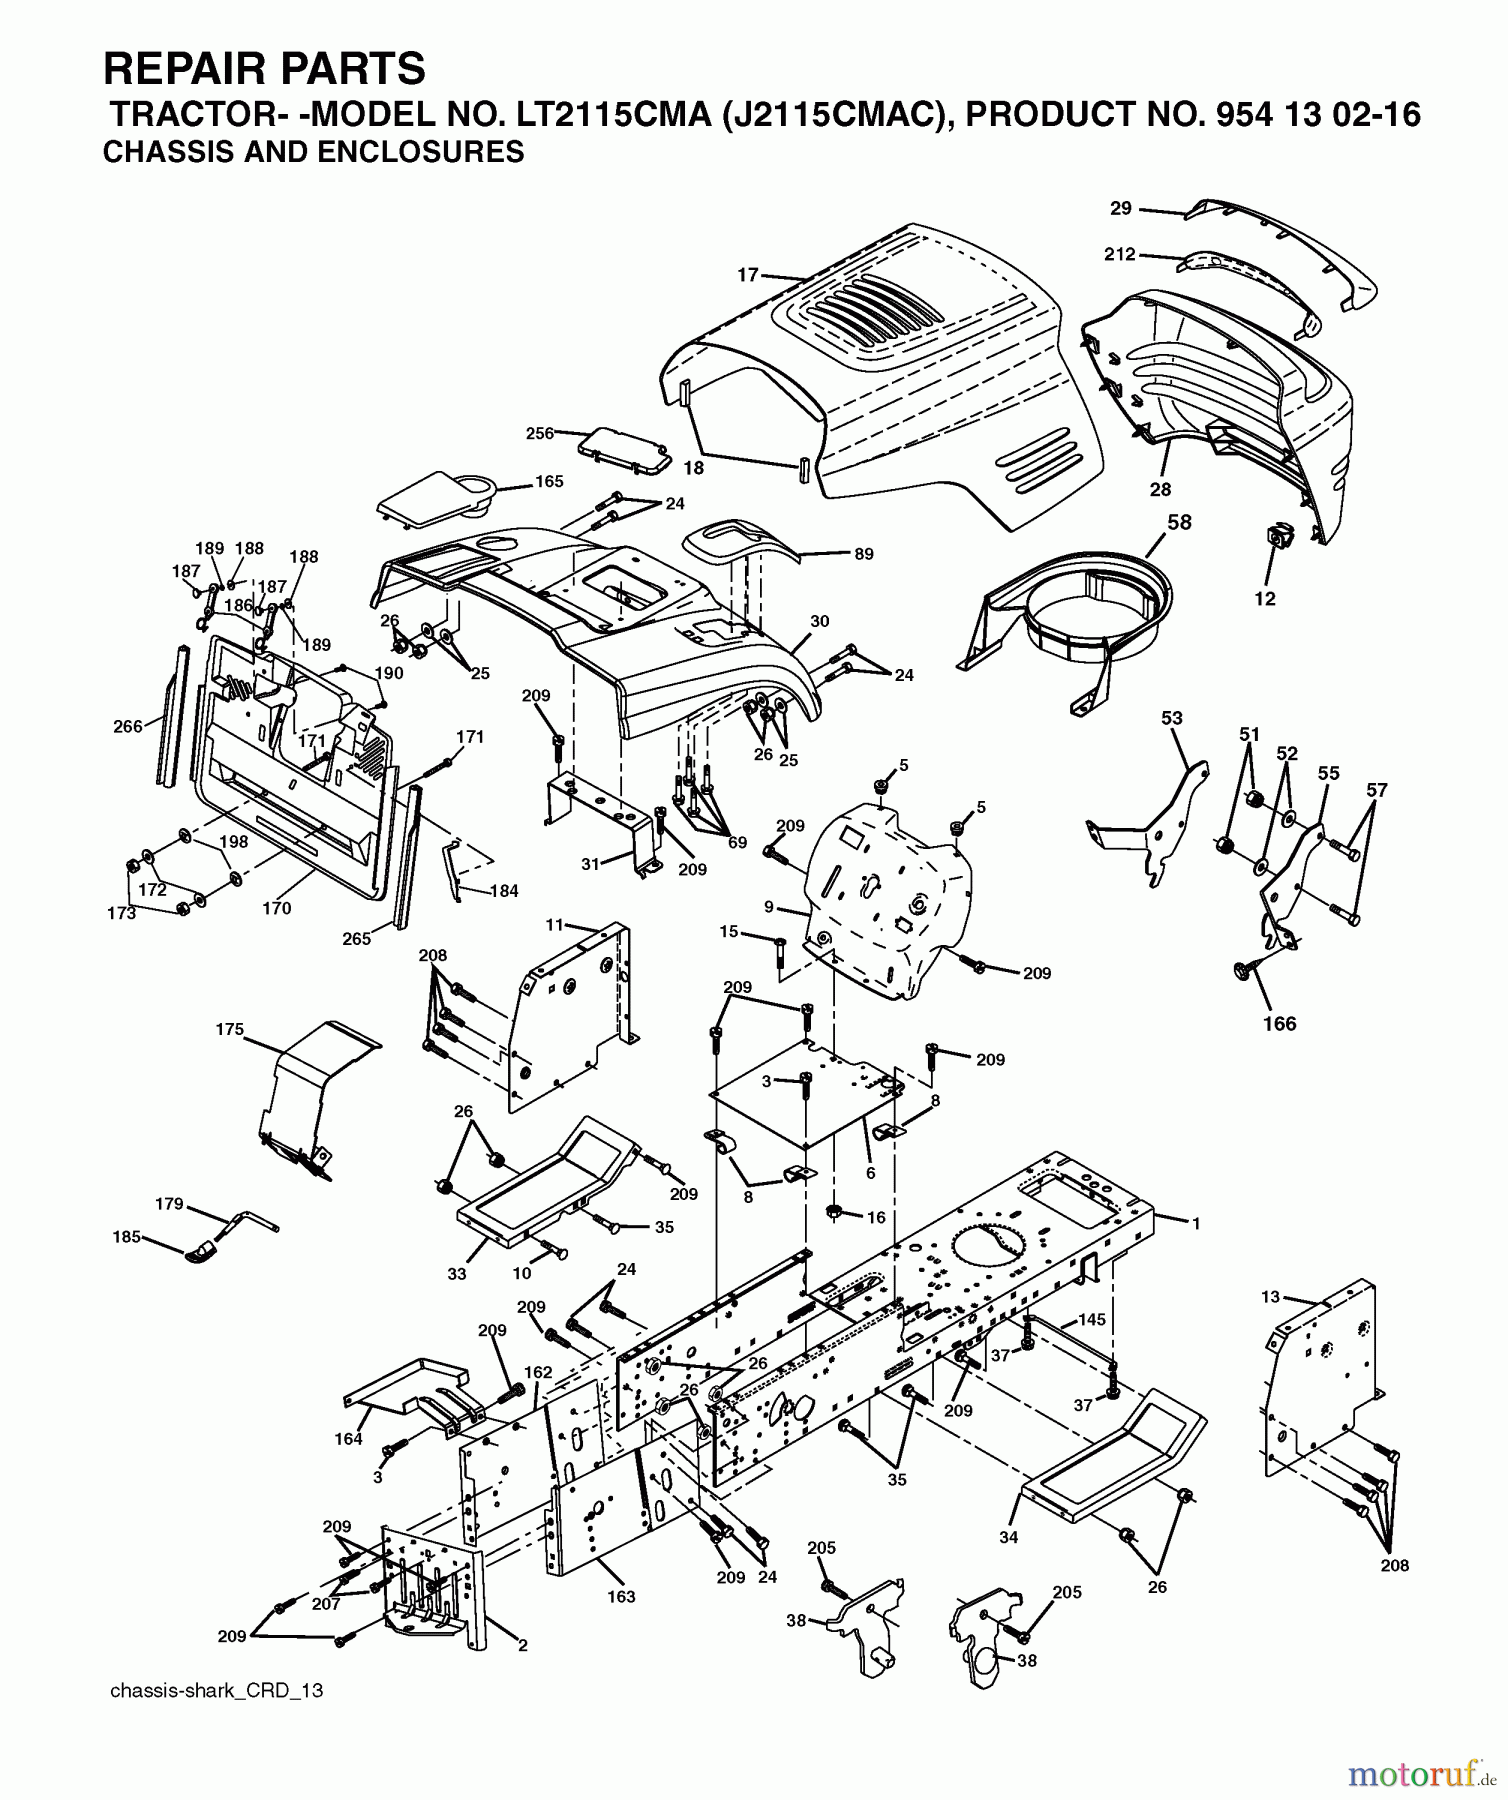  Jonsered Rasen  und Garten Traktoren LT2115 CMA (J2115CMAC, 954130216) - Jonsered Lawn & Garden Tractor (2004-06) CHASSIS ENCLOSURES